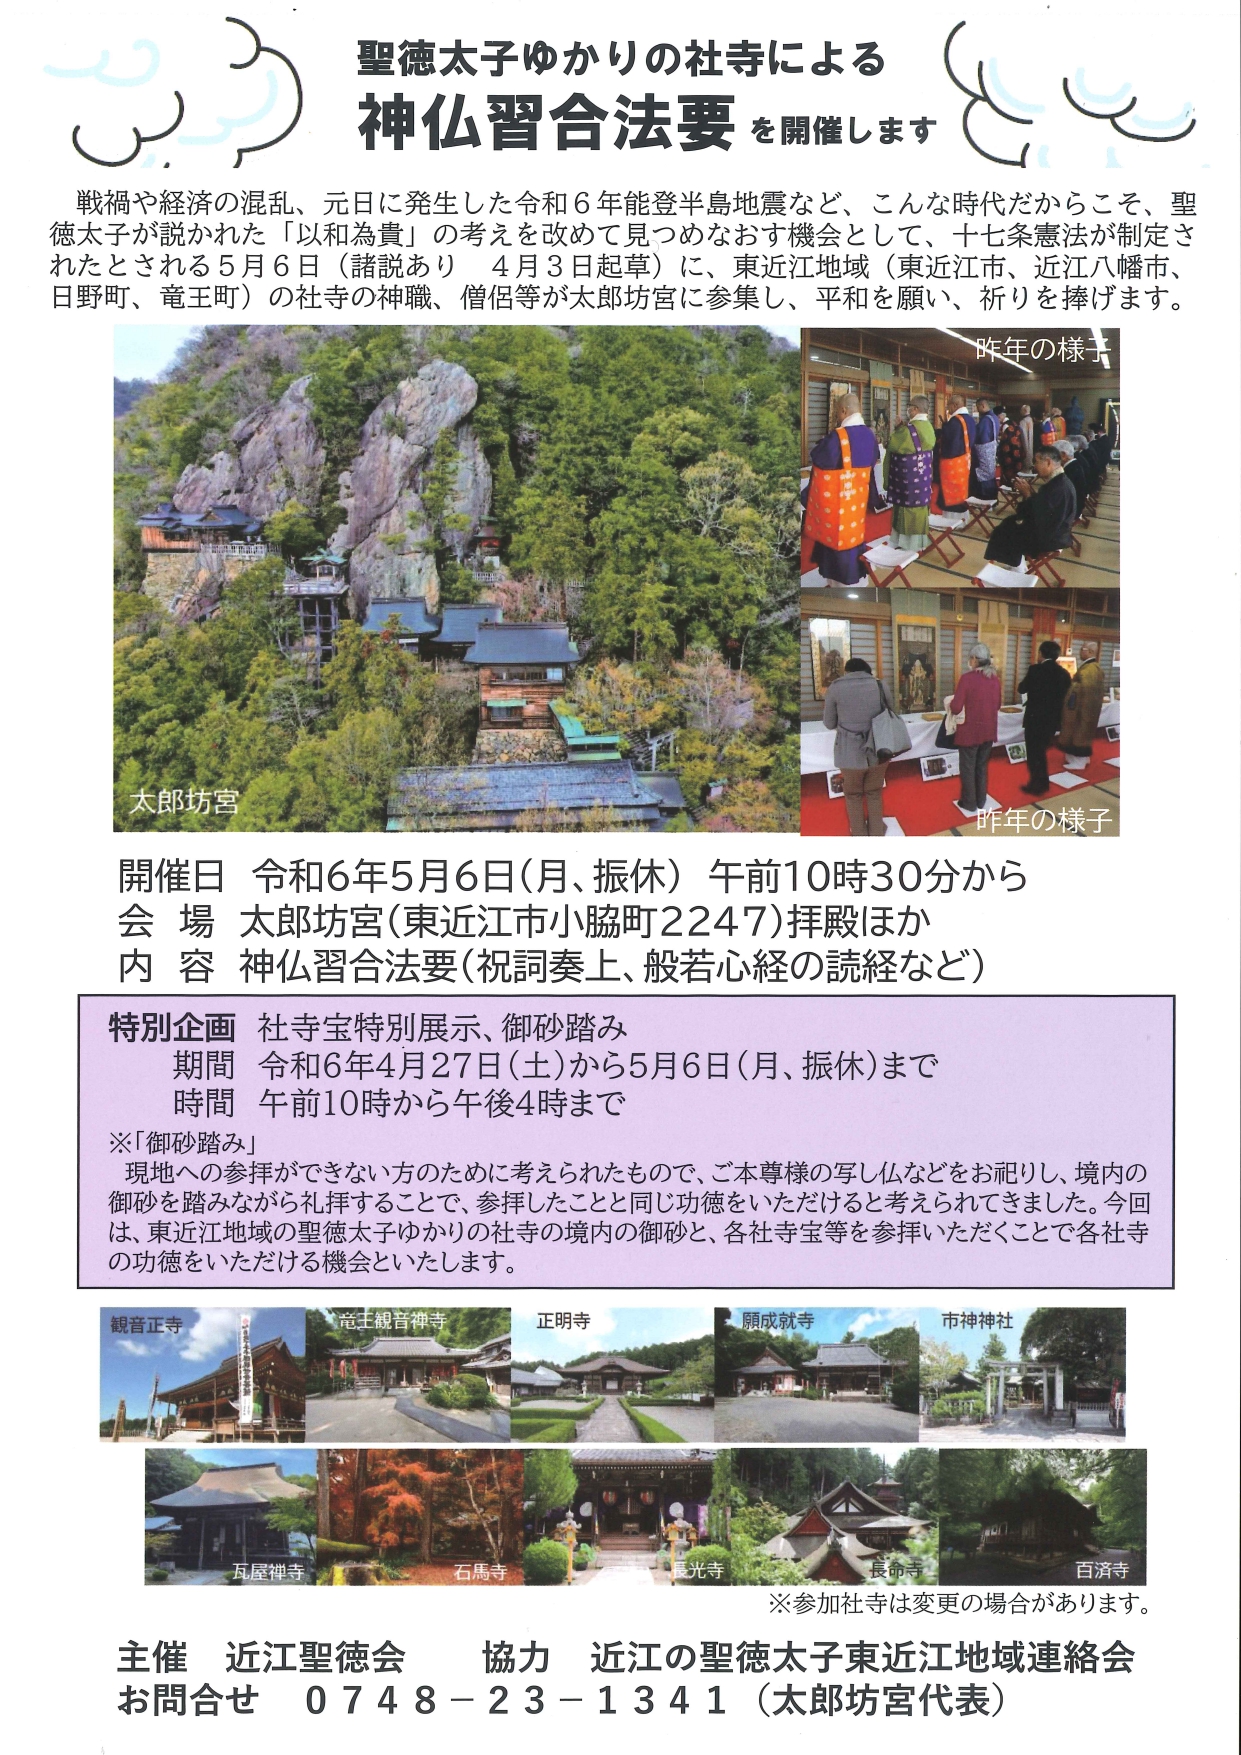 大本山永源寺での海外インバウンドや国内向け「座禅・法話体験」の受入れについて